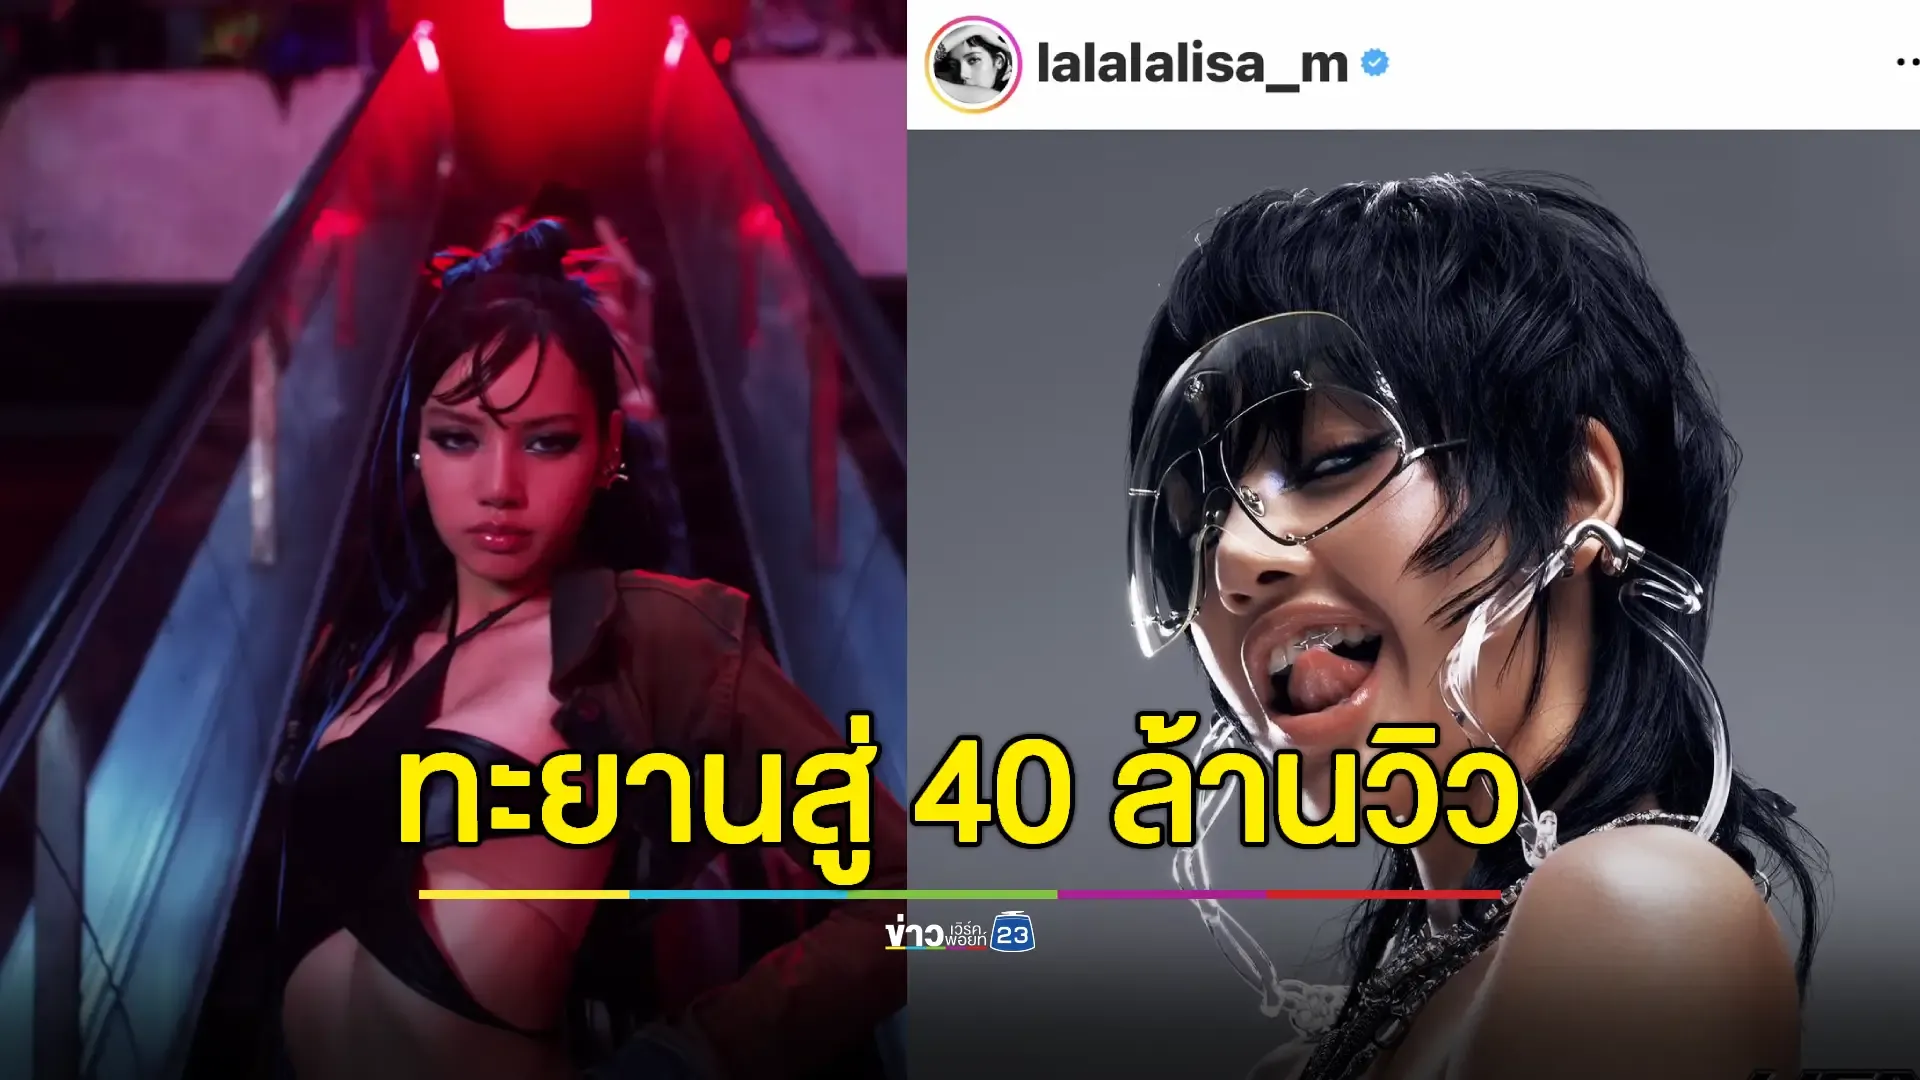 คนไทยขอบคุณ 'ลิซ่า' เลือกถนนเยาวราชถ่าย MV "ROCKSTAR" สร้างชื่อเสียงให้เมืองไทย